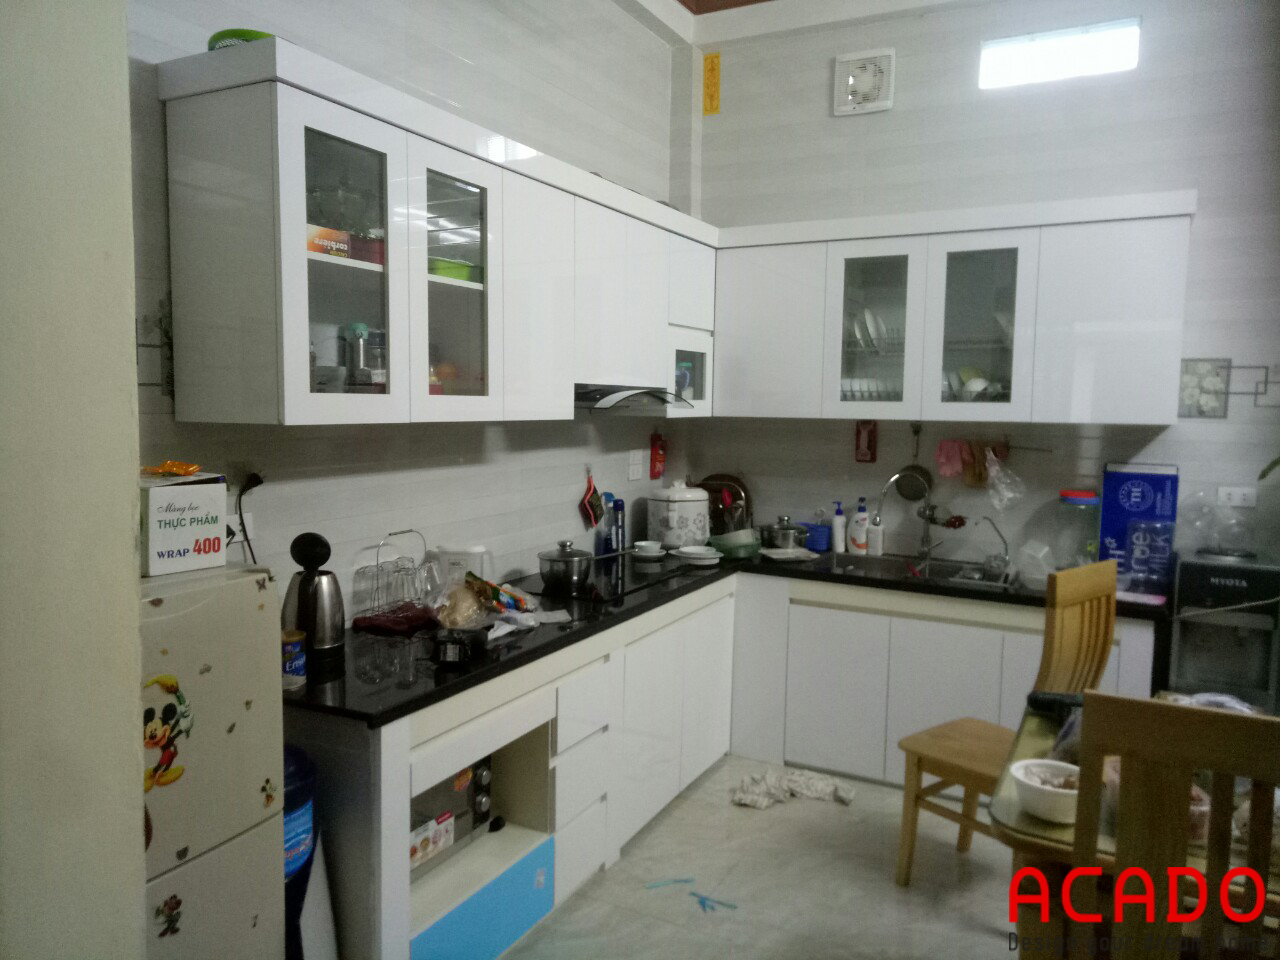 ACADO thiết kế và thi công tủ bếp tại Kiến Hưng - Hà Đông, gia đình anh Triệu